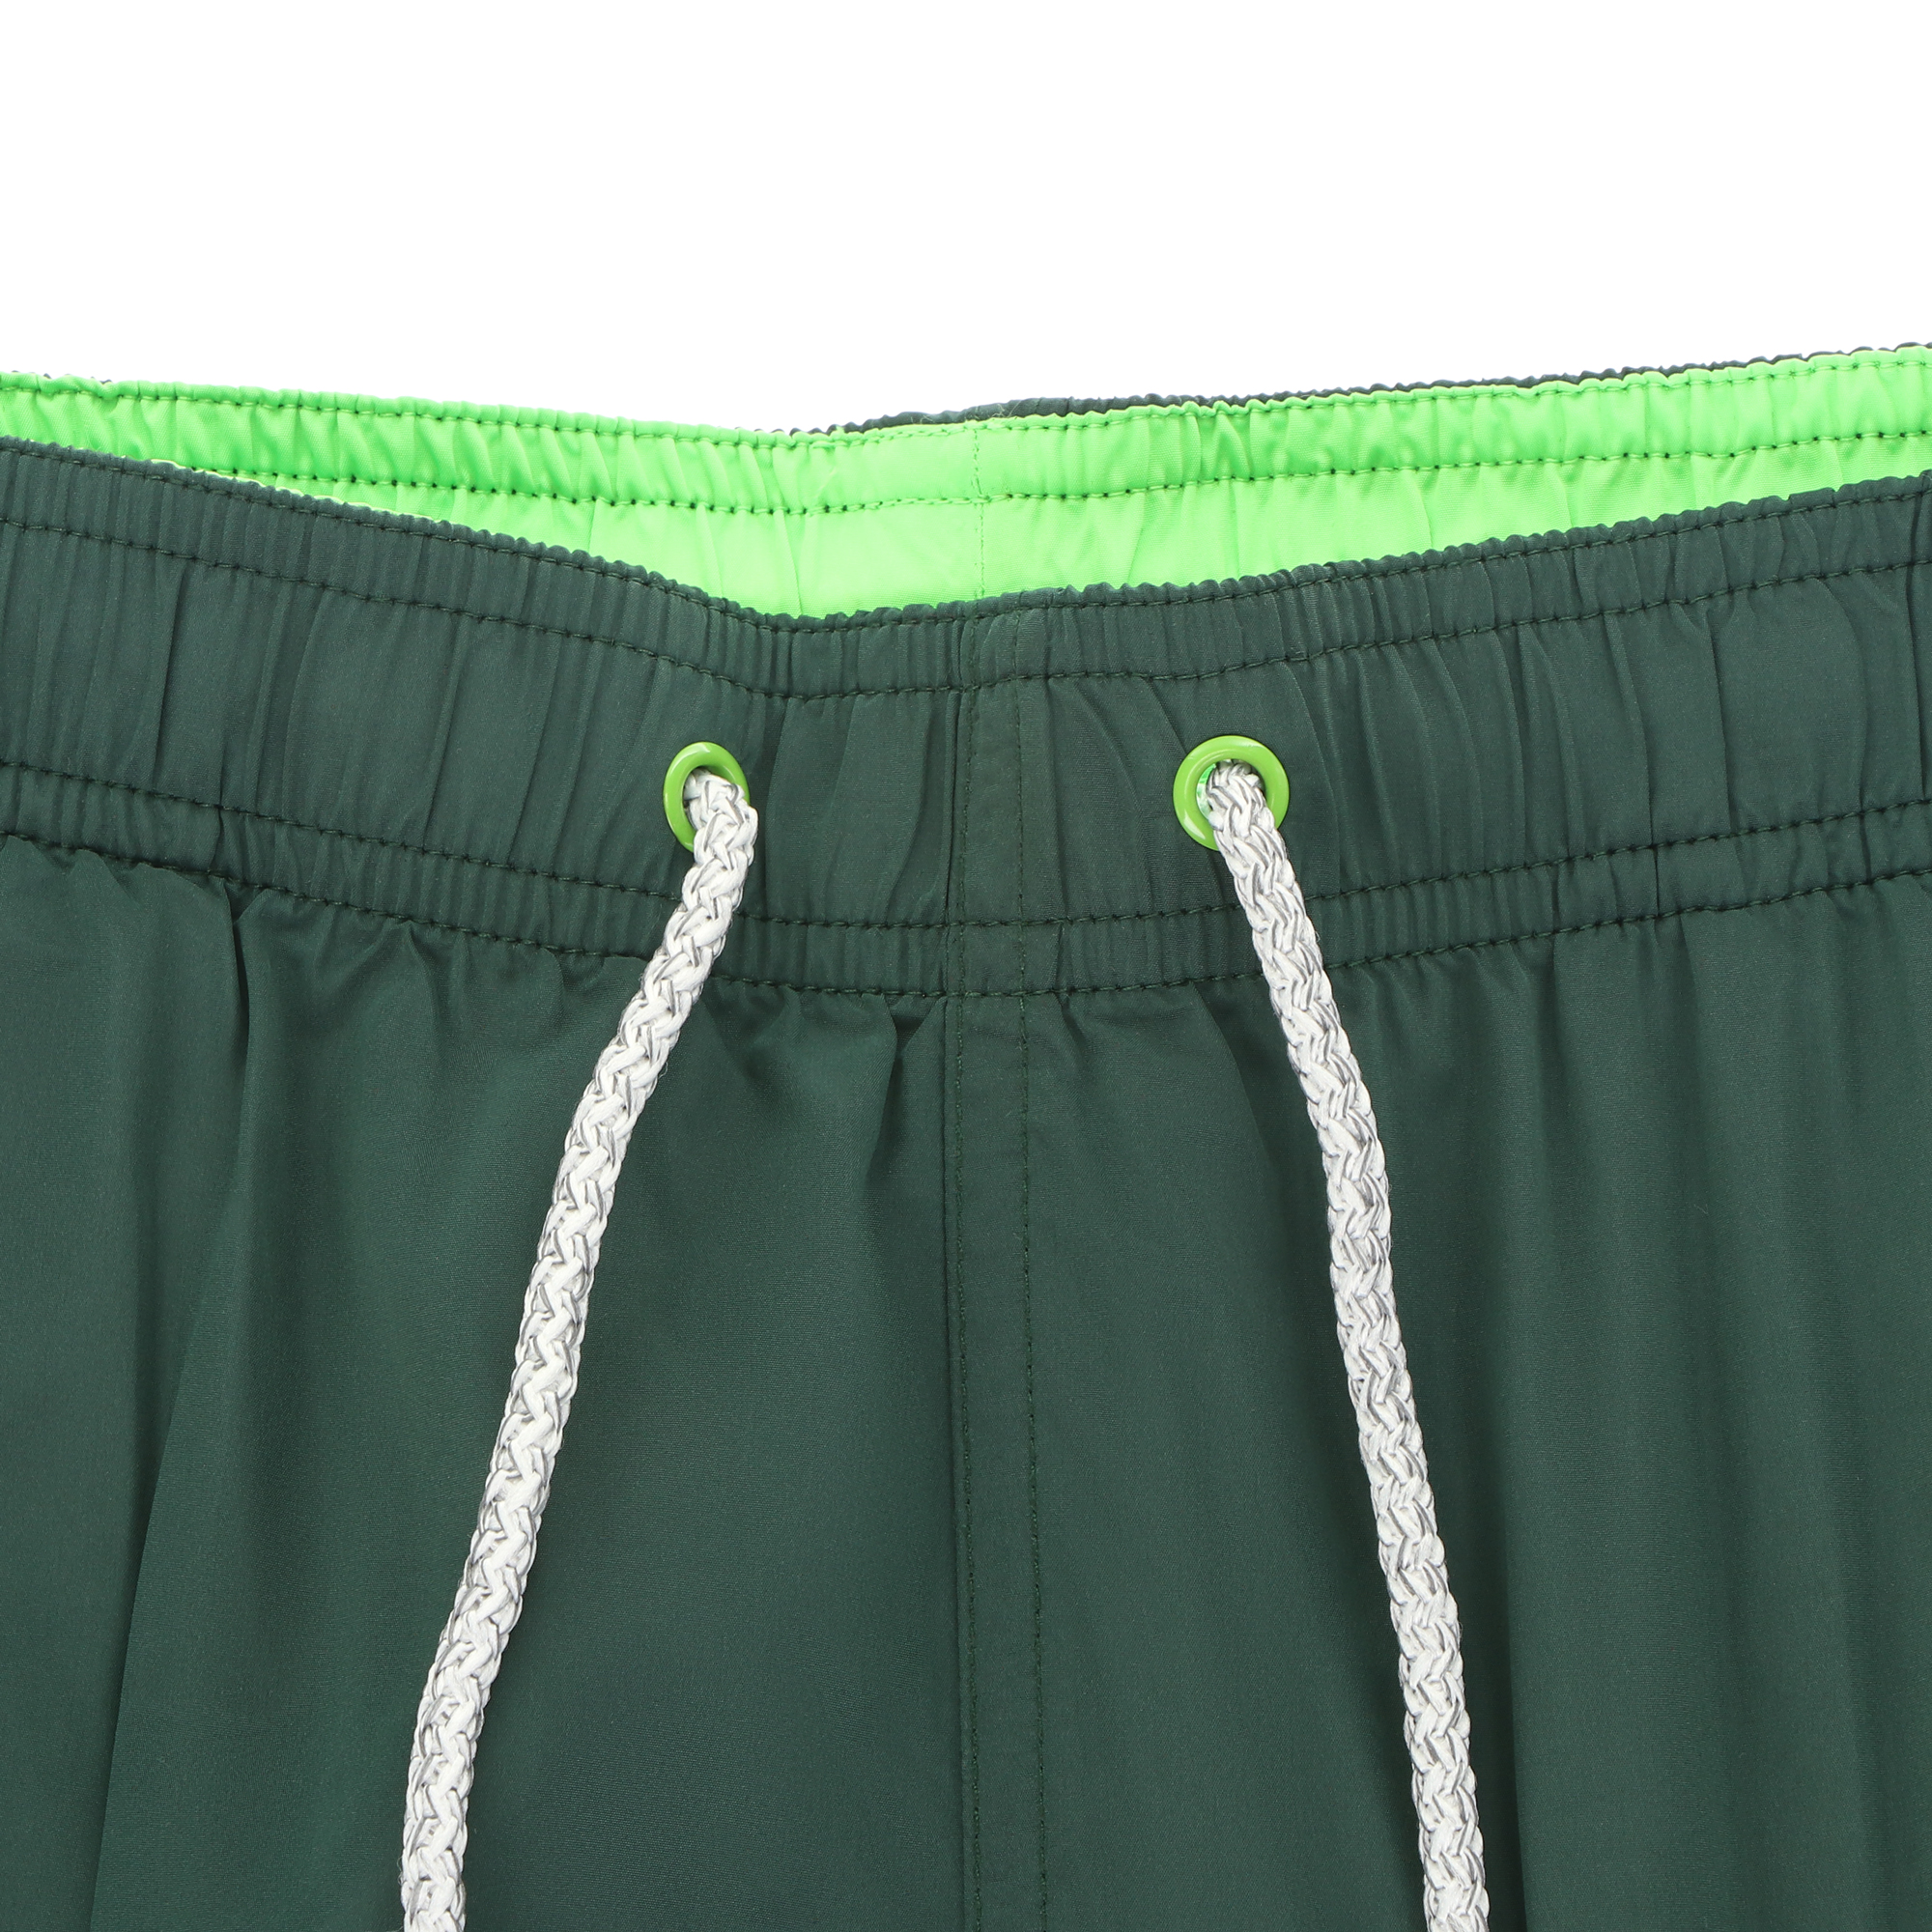 Мужские пляжные шорты Joyord зелёные, цвет зелёный, размер S - фото 2